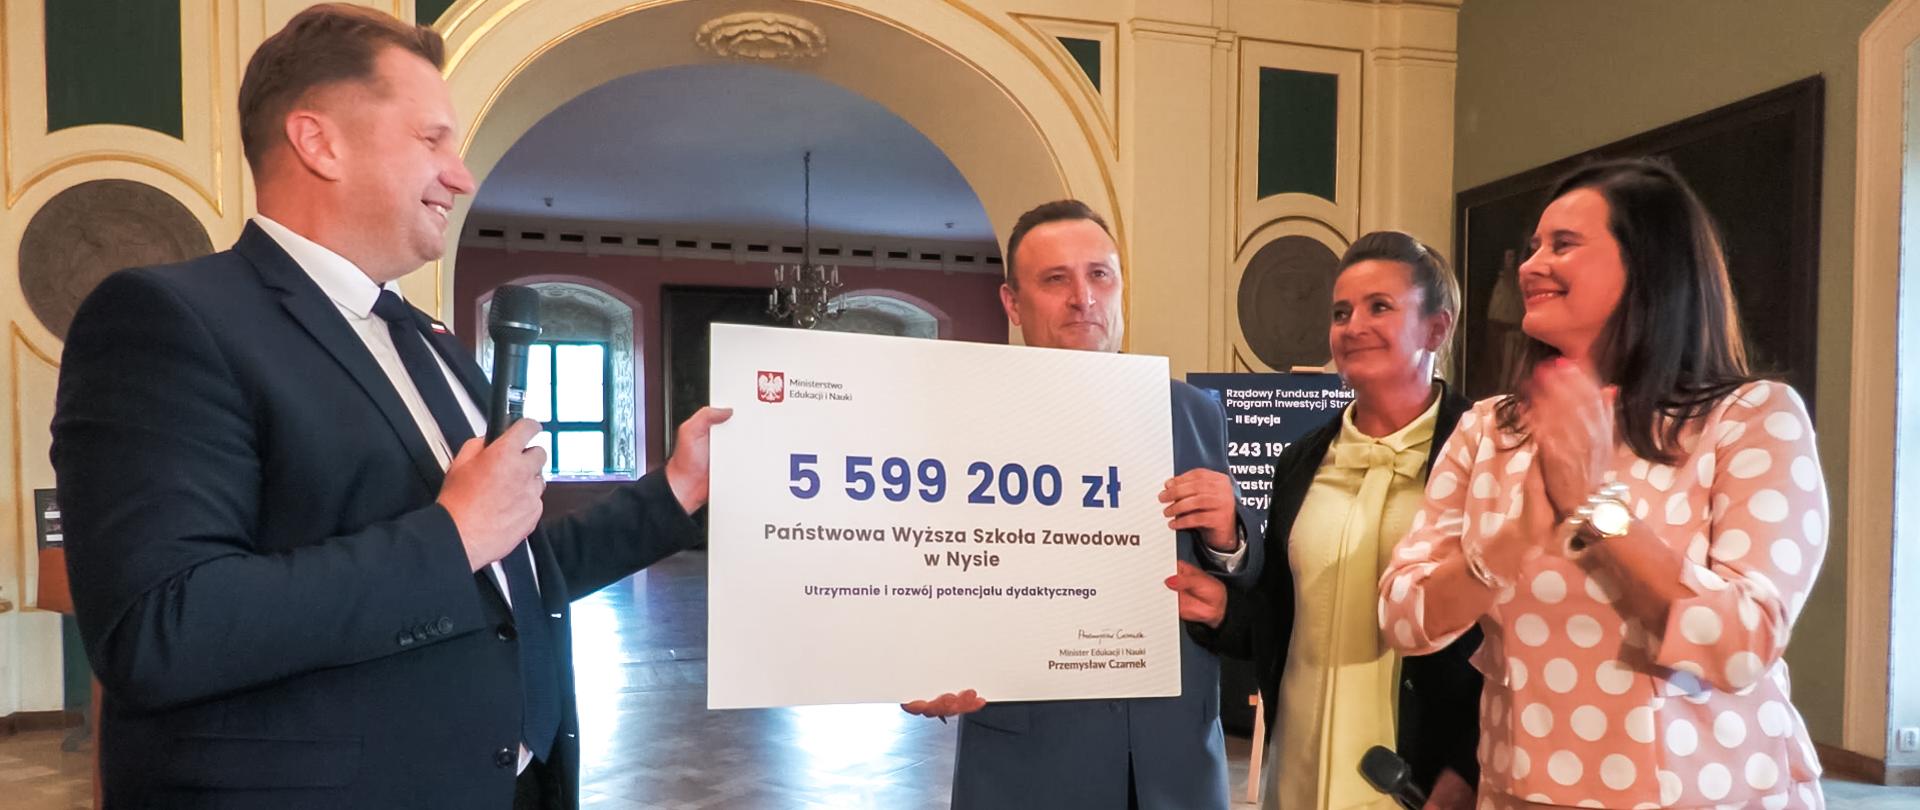 Minister stoi obok grupy osób - dwóch kolorowo ubranych kobiet i mężczyzny w garniturze, który trzyma duży symboliczny czek z napisem 5 599 200 zł.